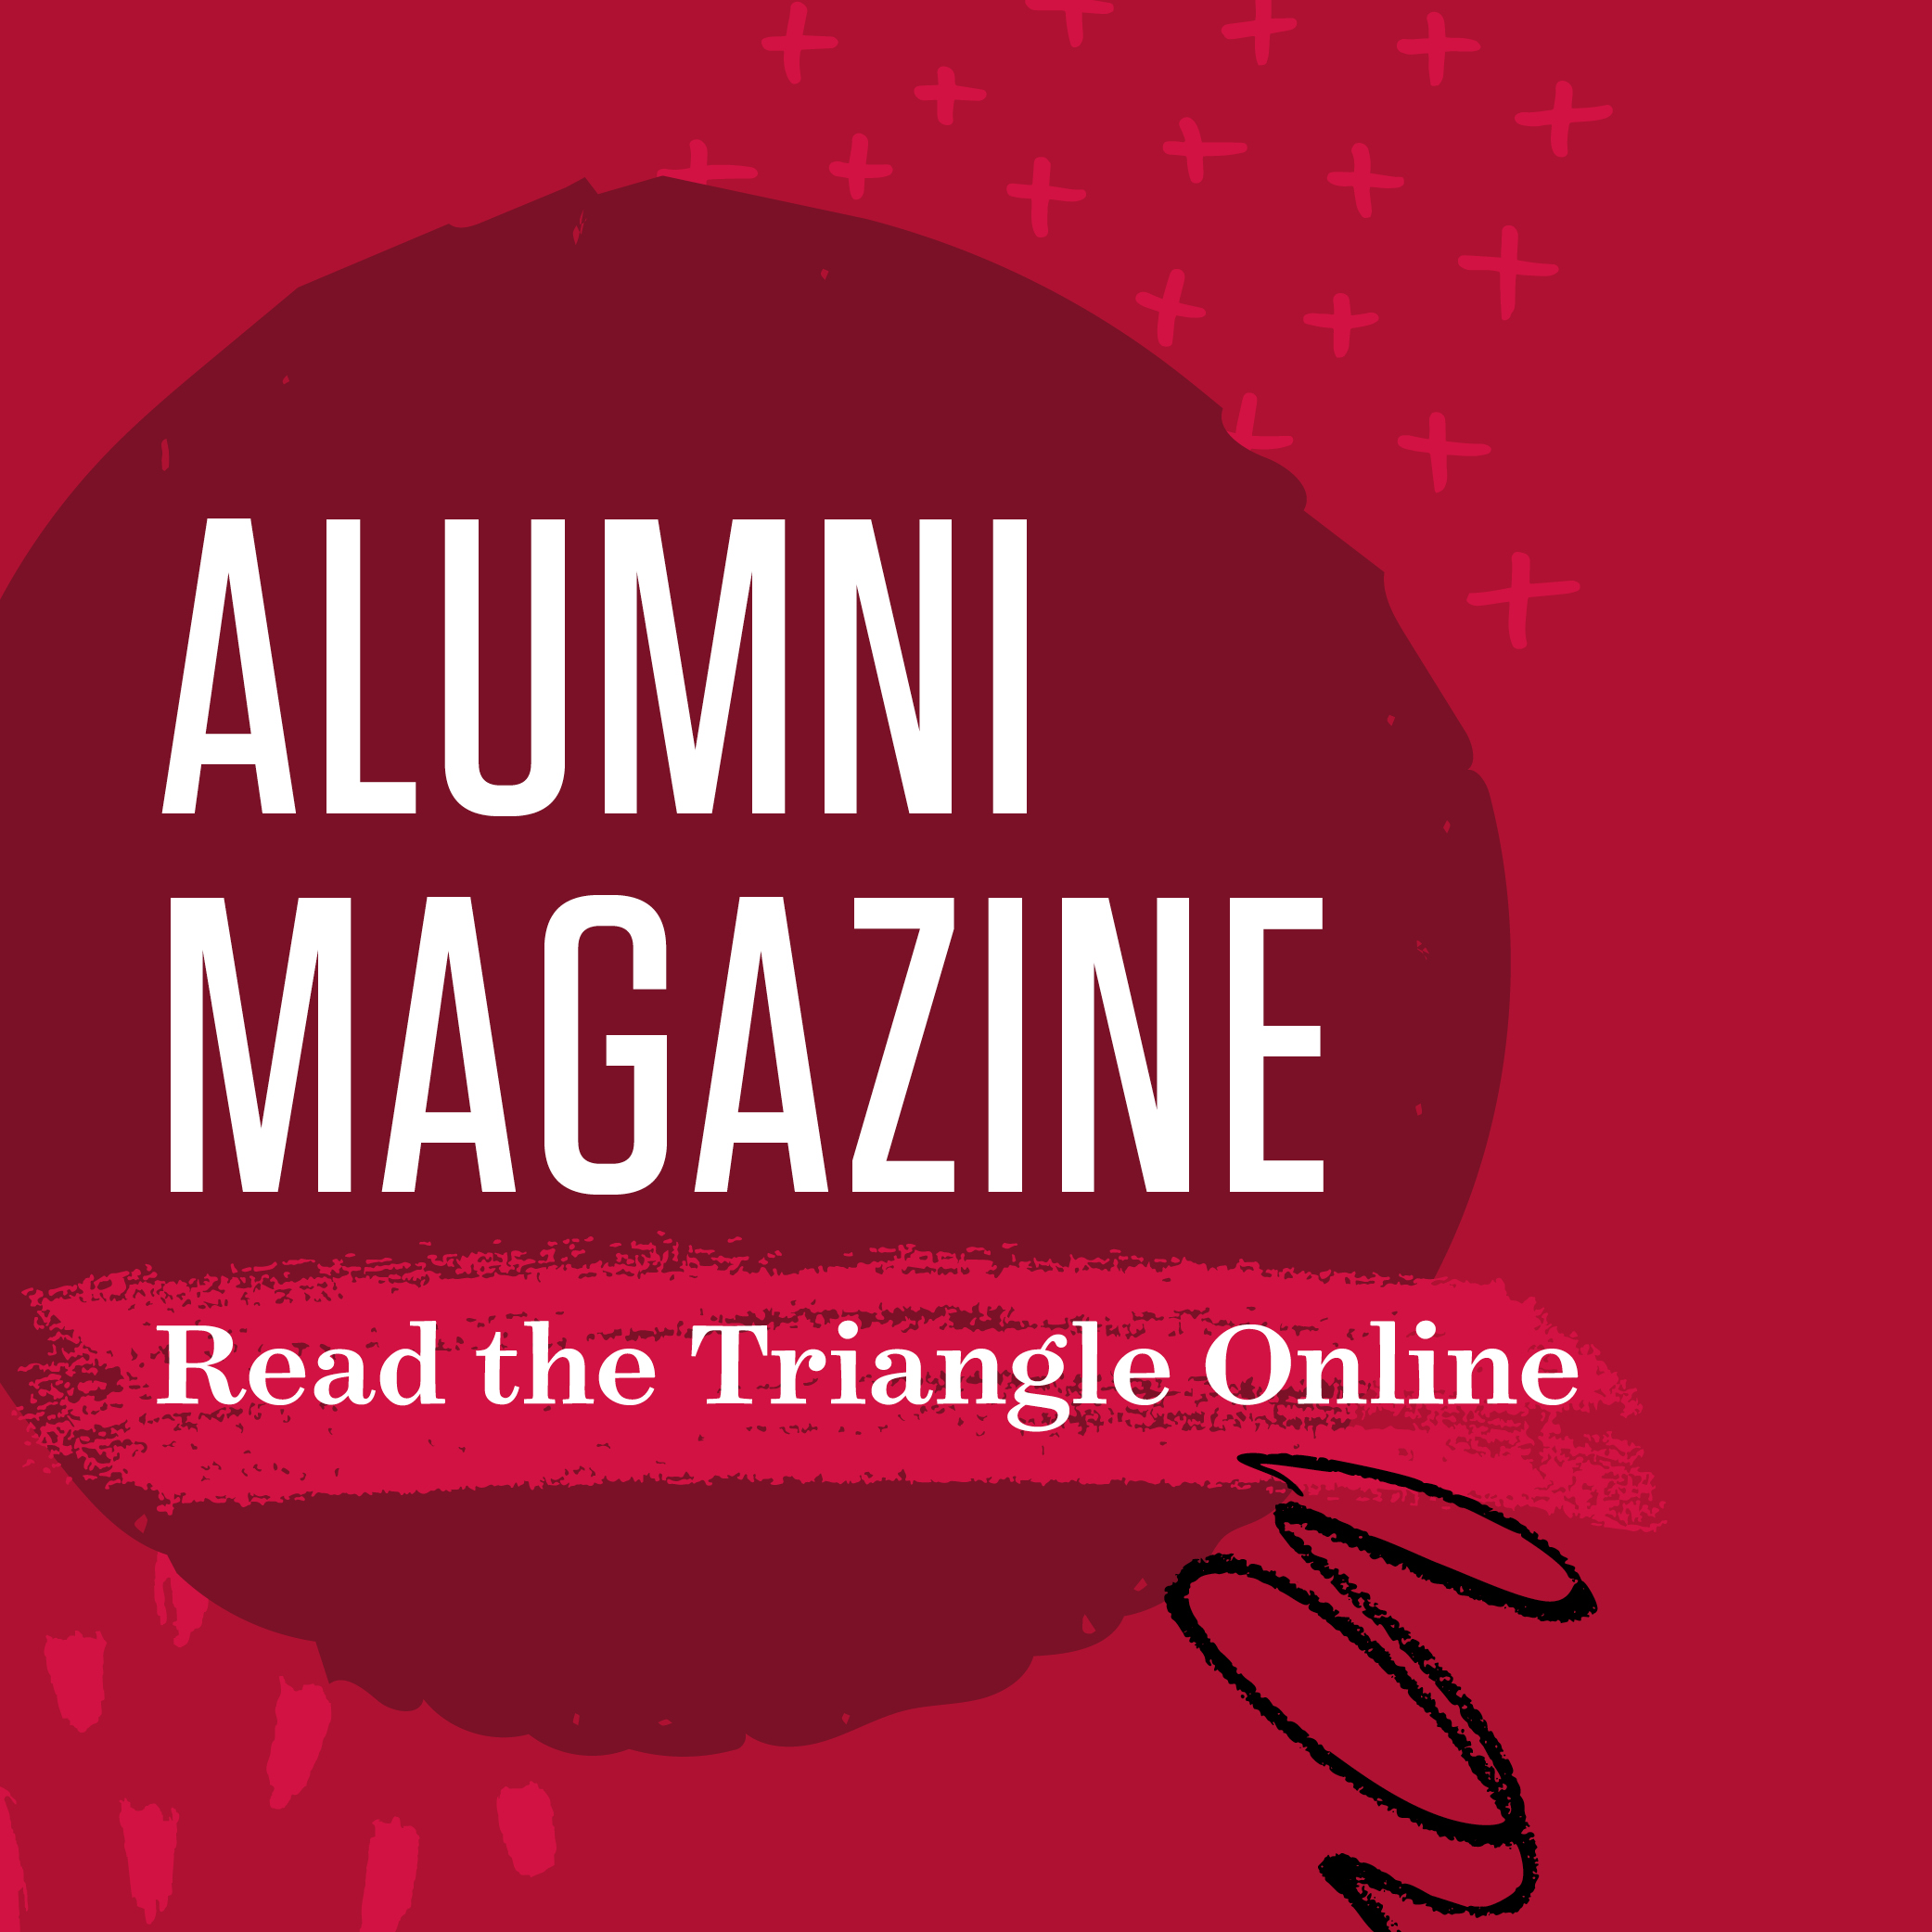 Alumni Magazine: Read The Triangle online